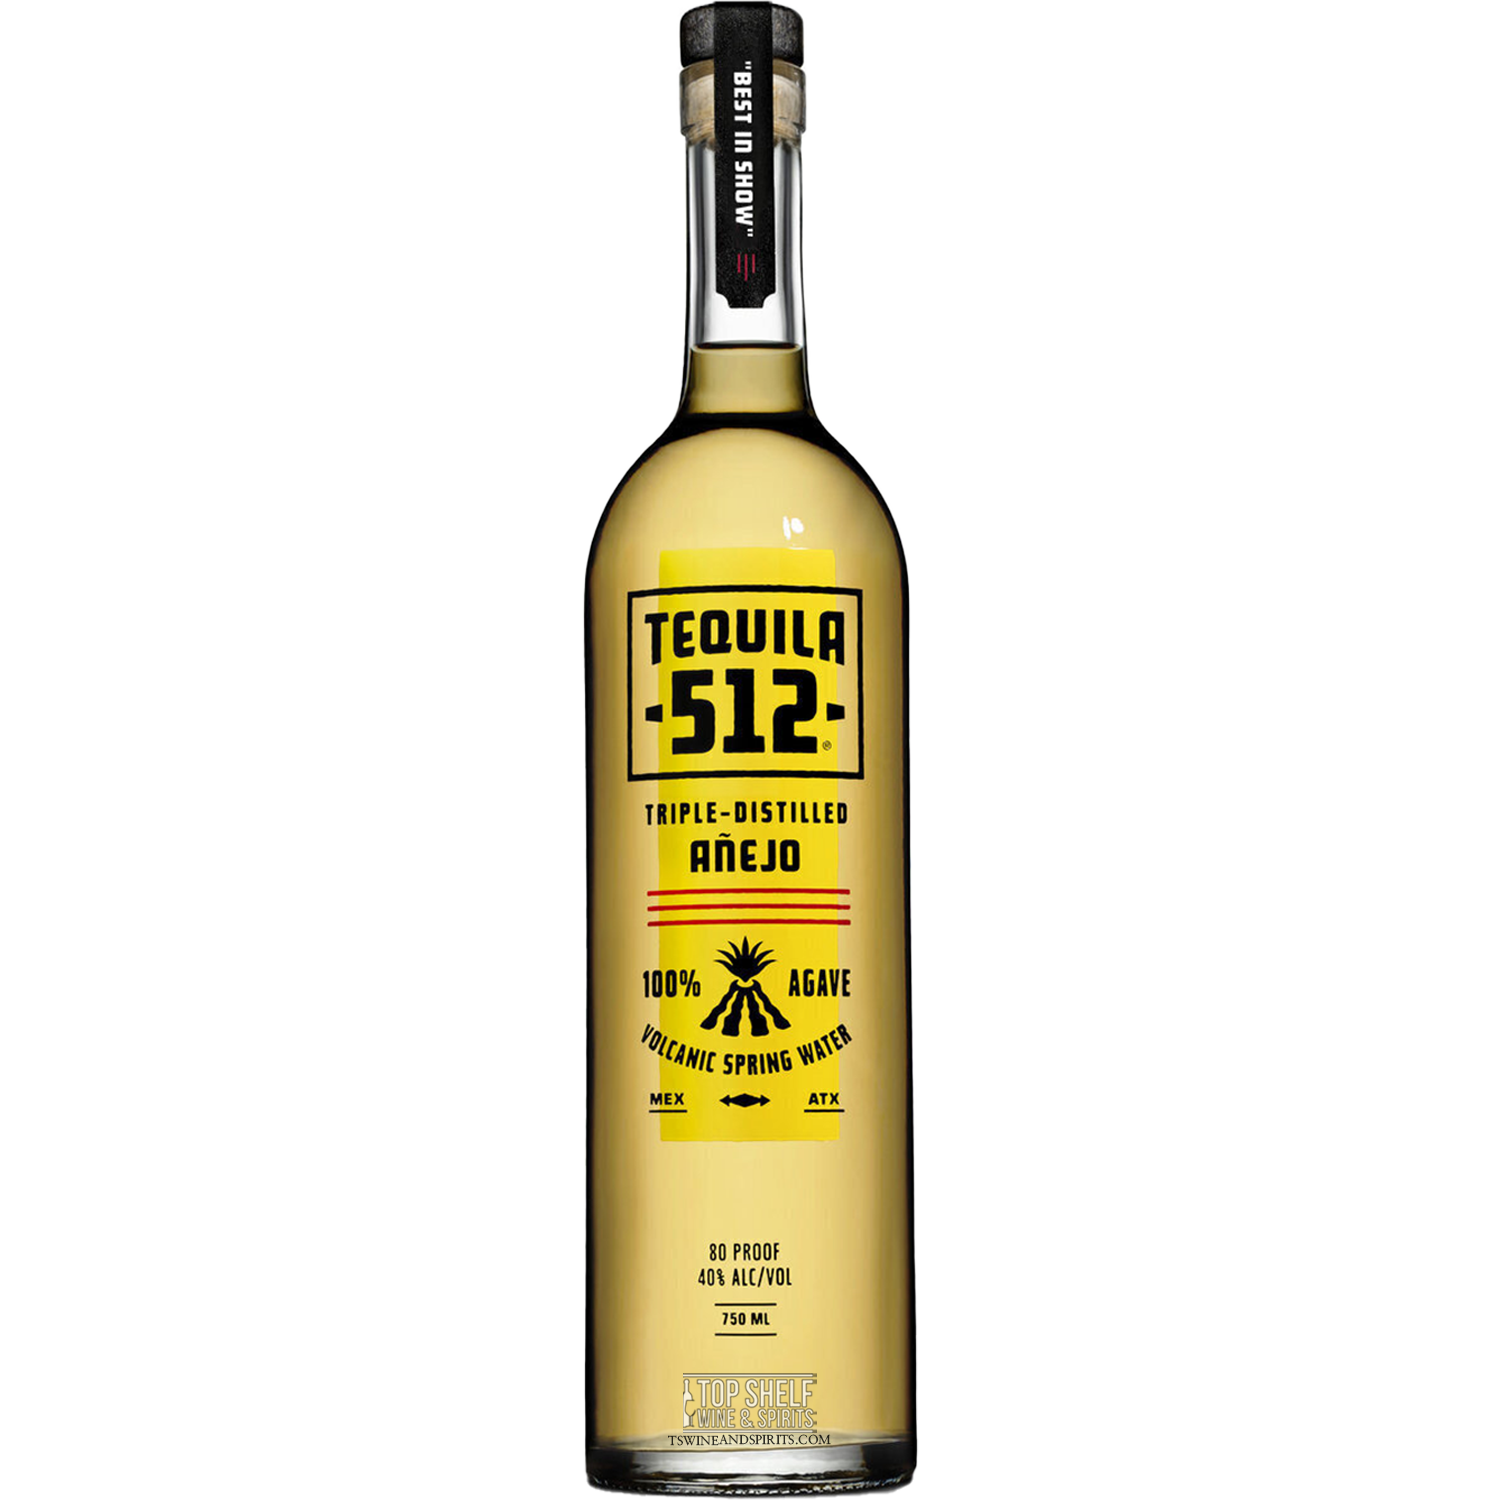 Tequila 512 Añejo